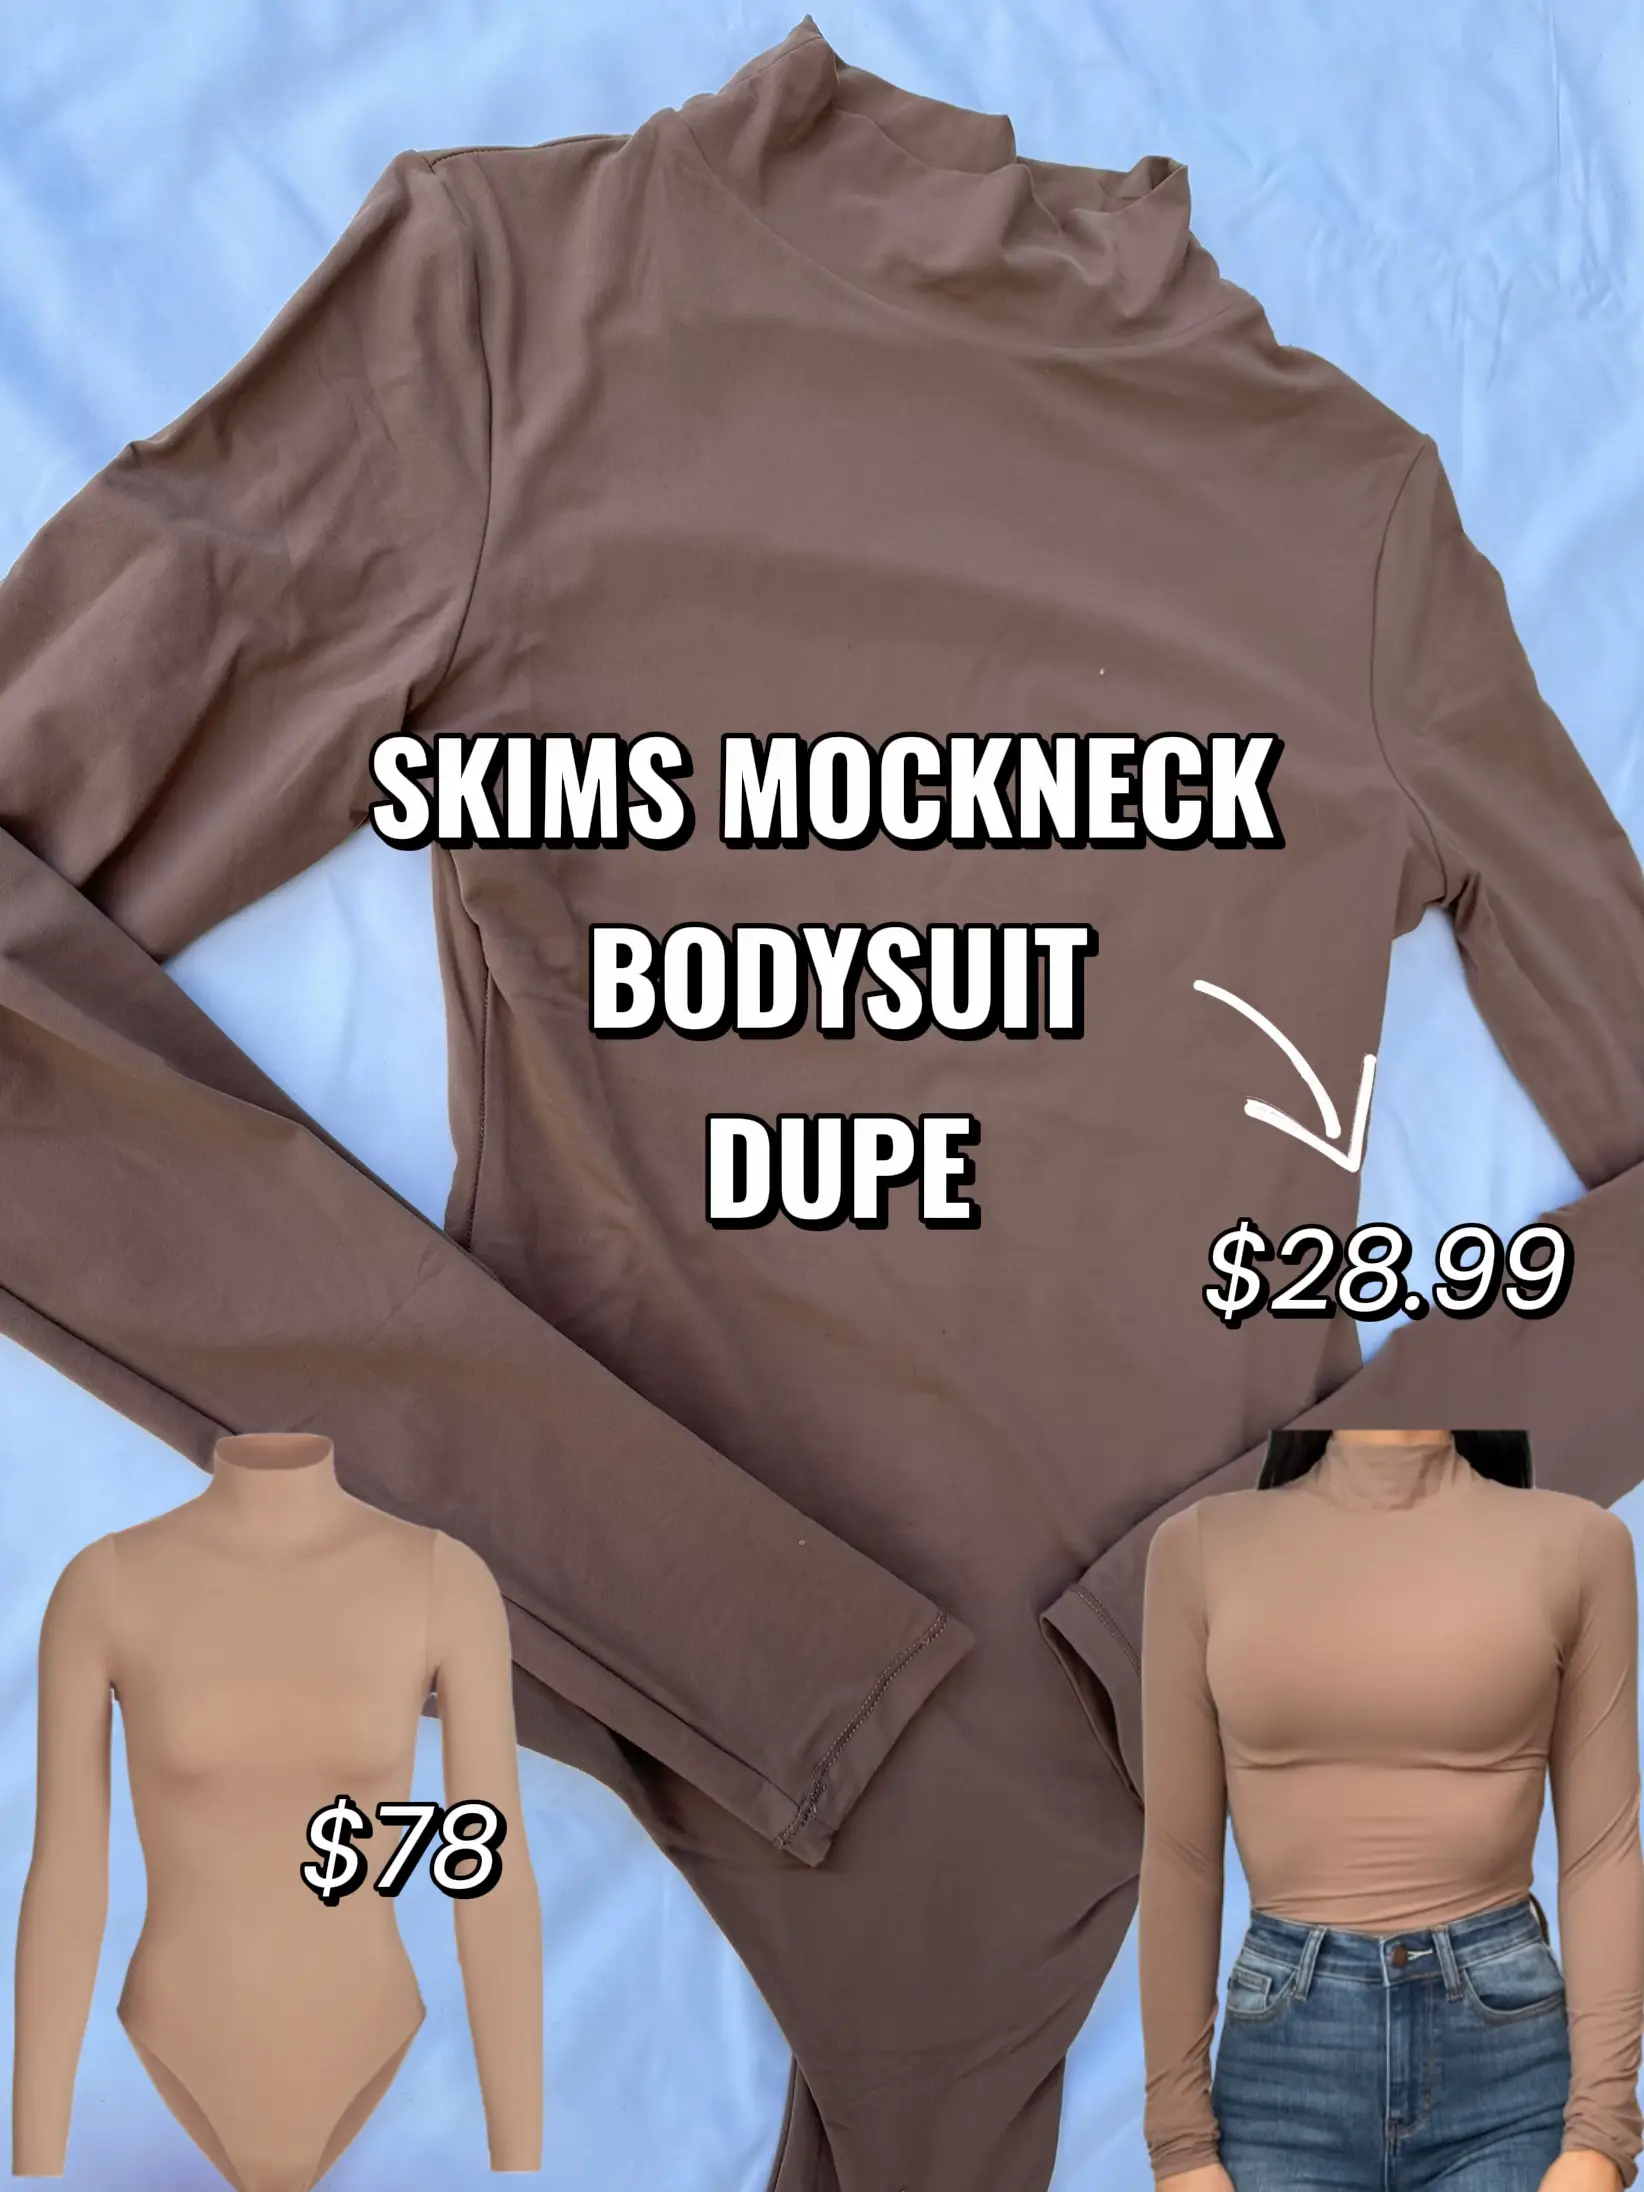 Skims Mockneck Bodysuit Dupe from